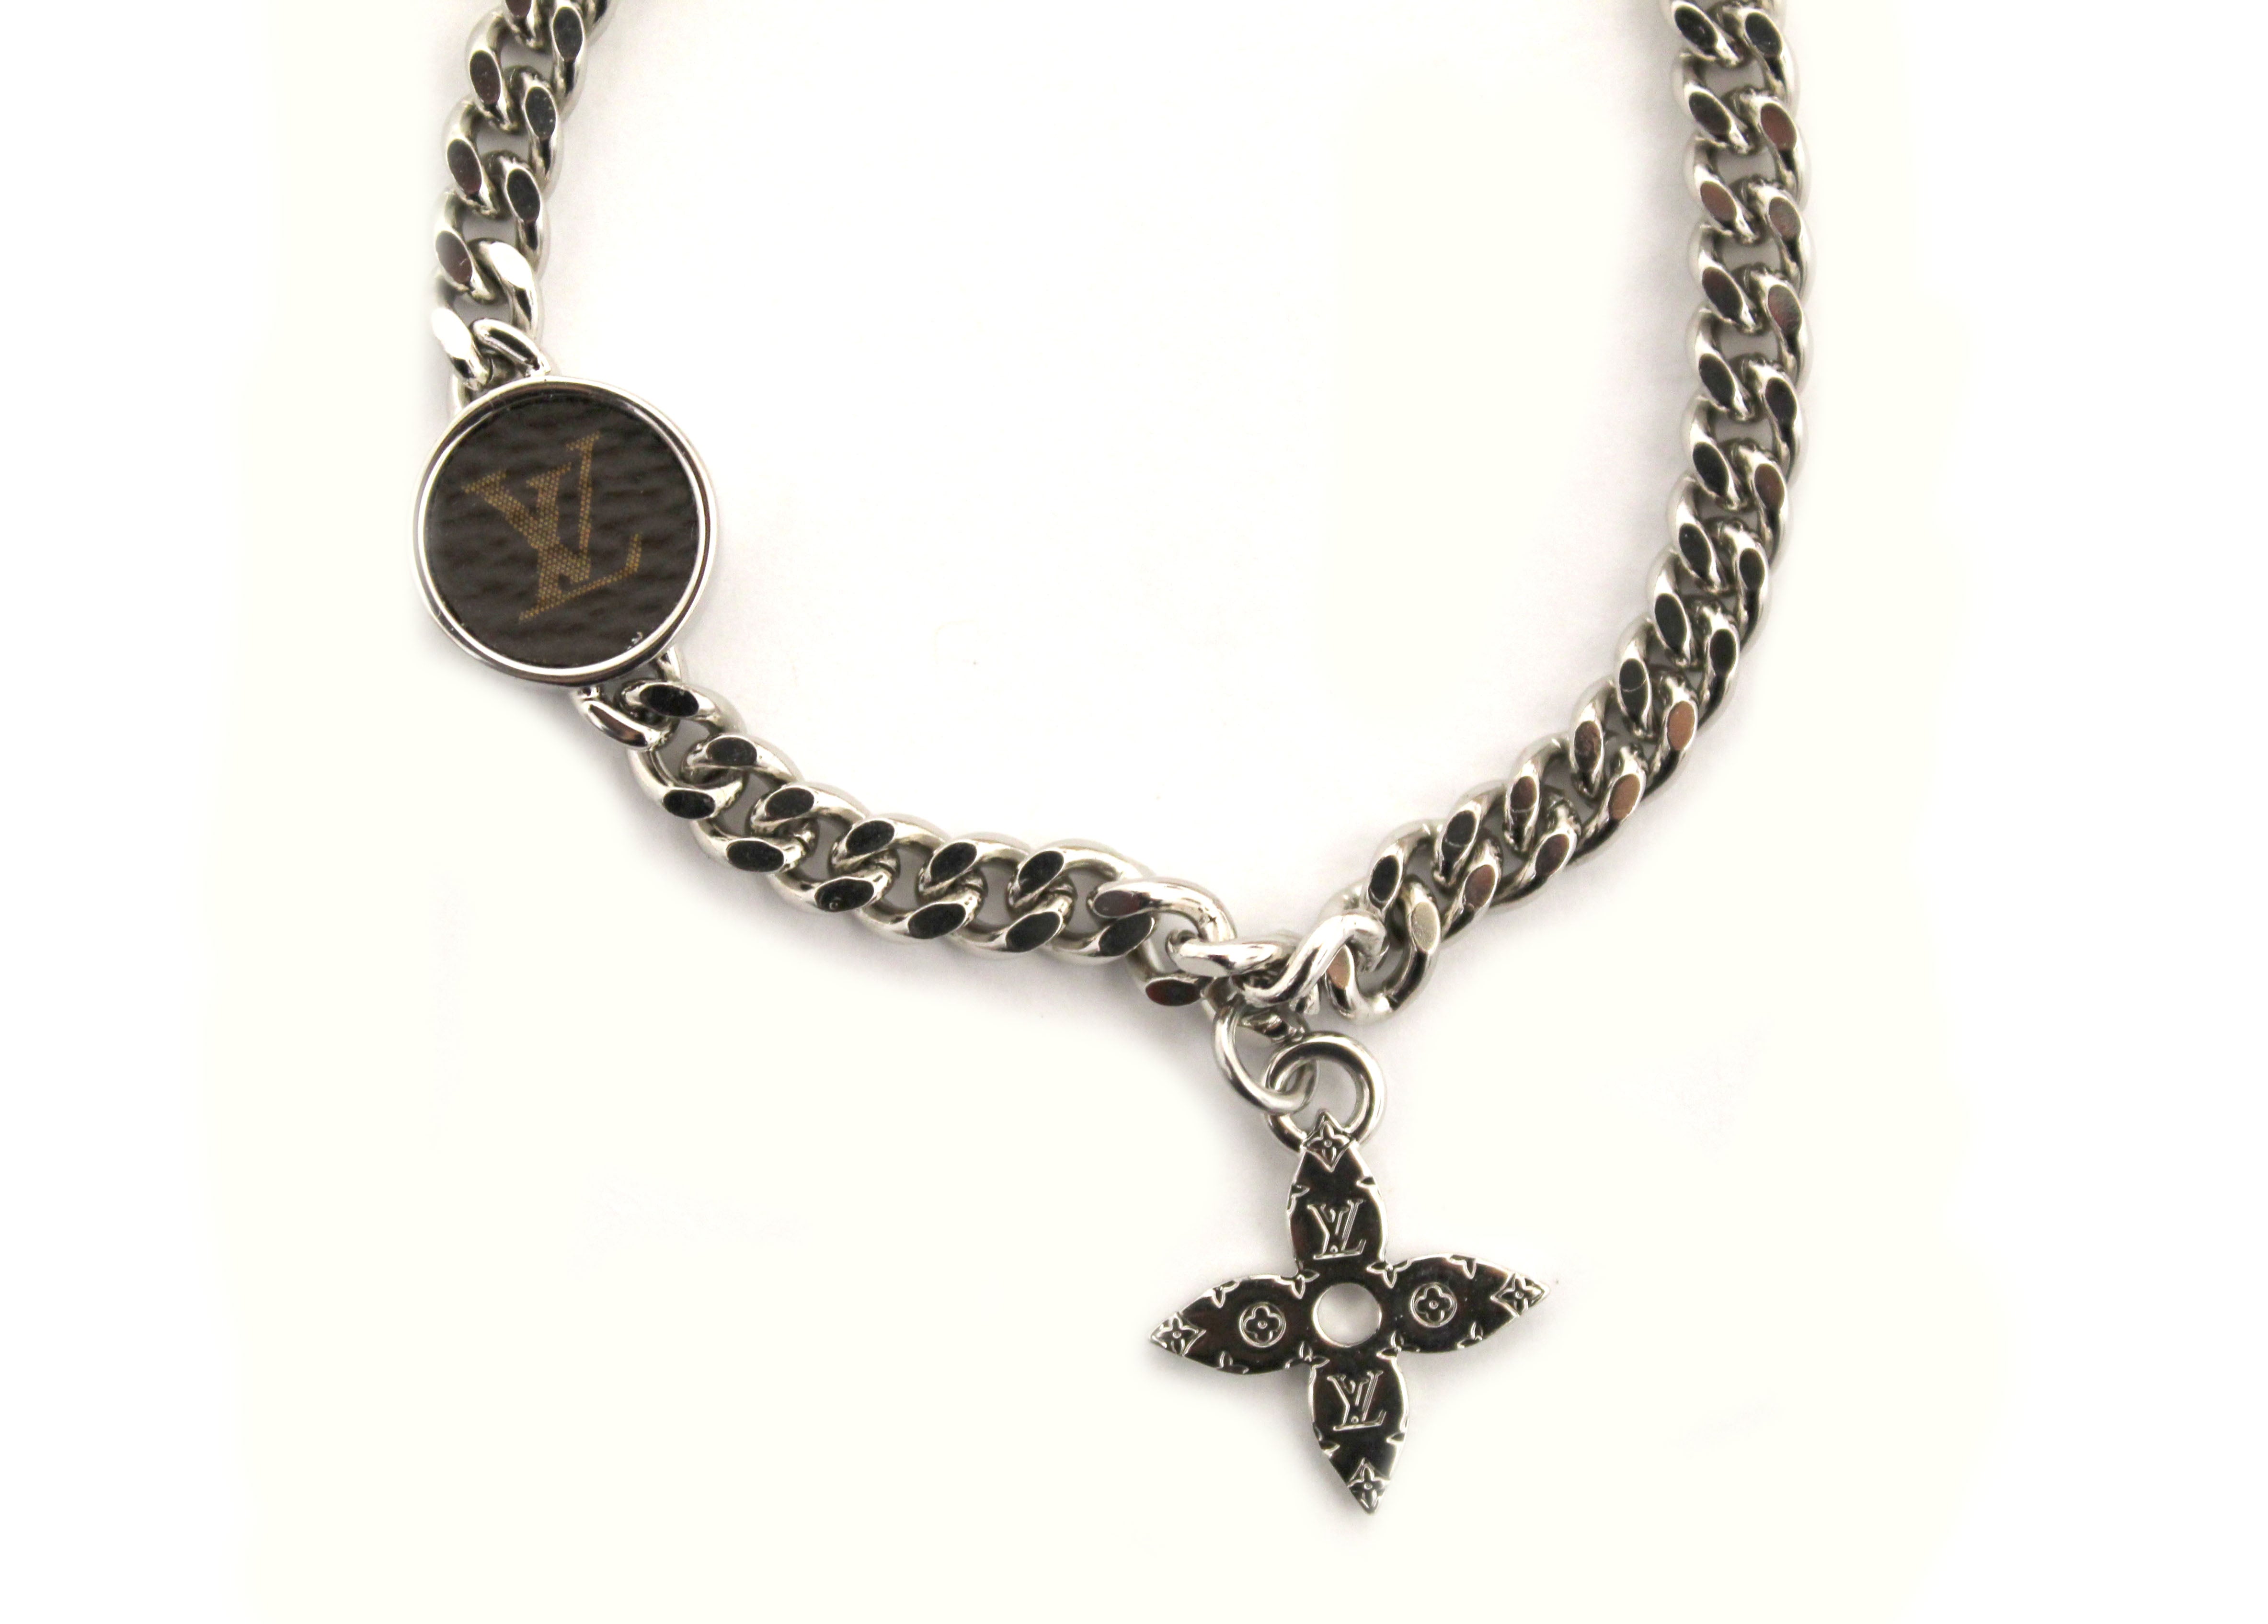 Authentic Louis Vuitton Silver Blossom Chain Bracelet